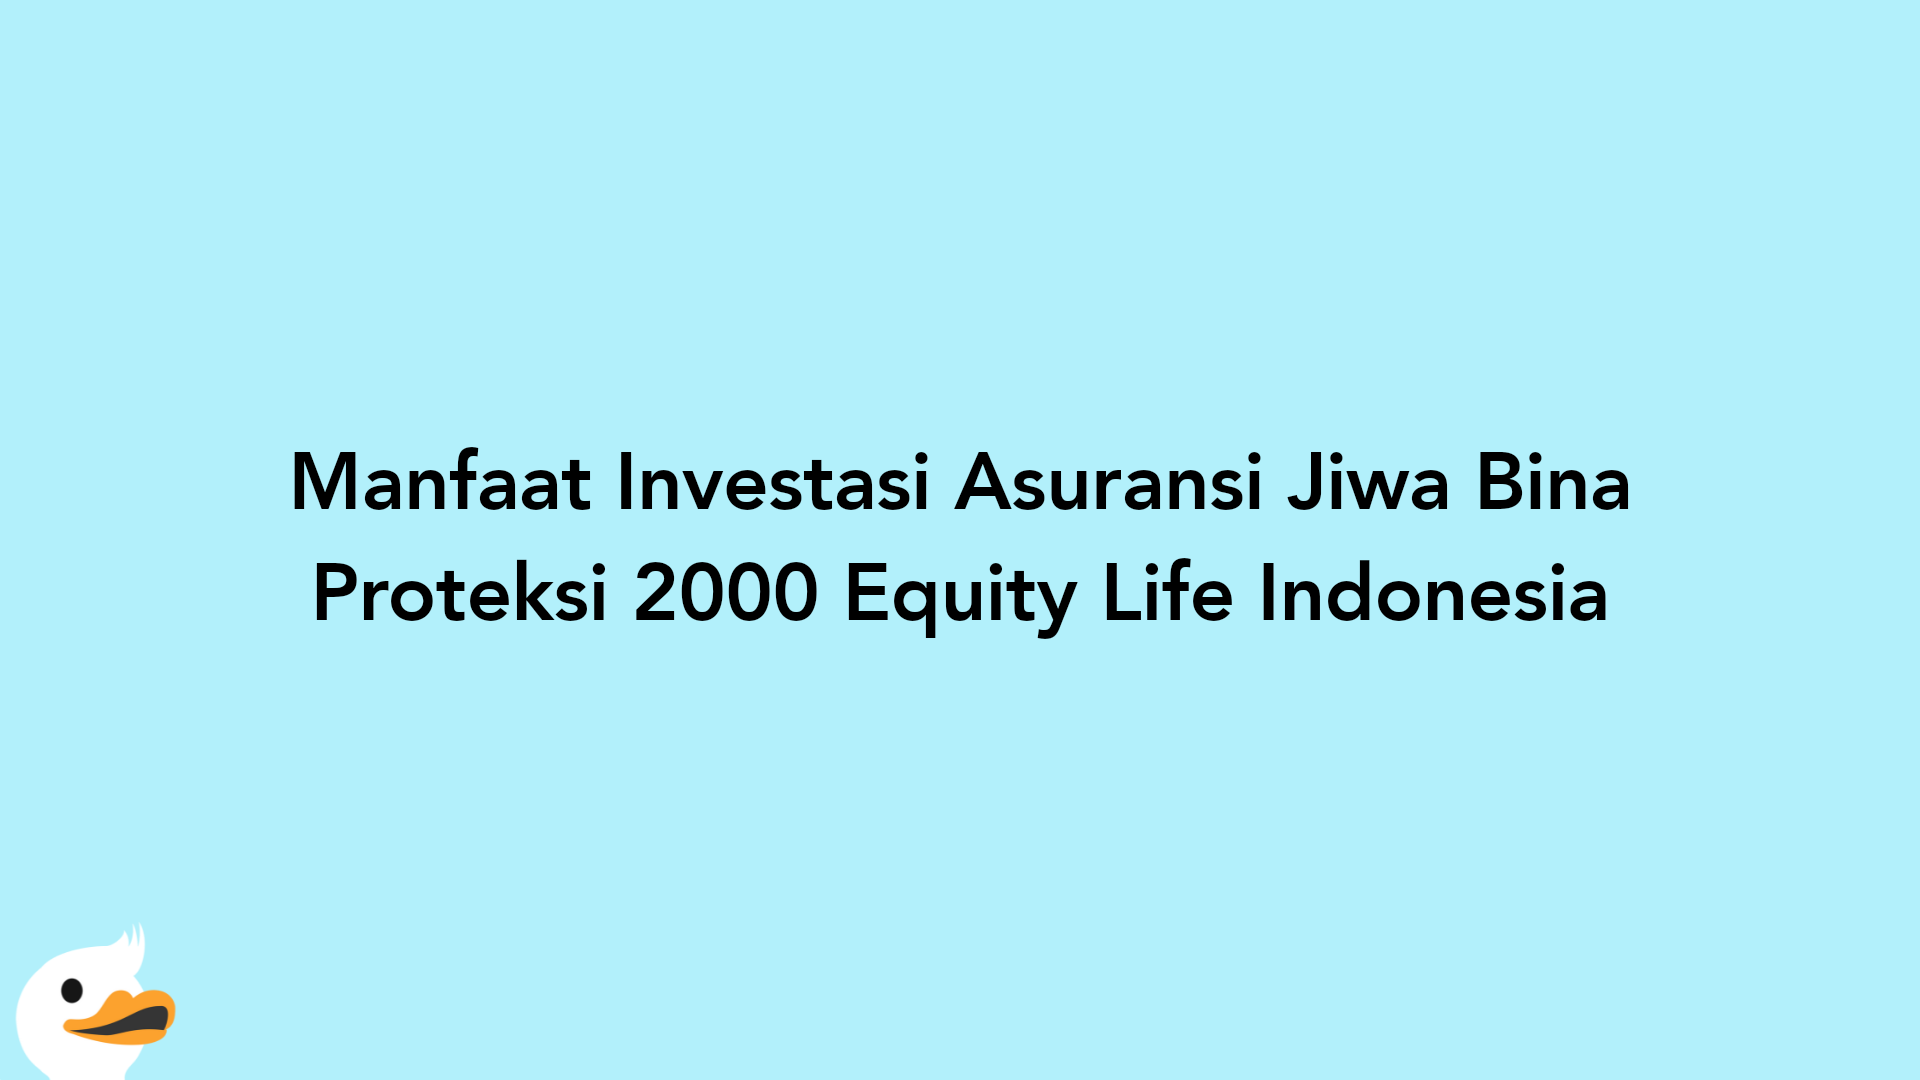 Manfaat Investasi Asuransi Jiwa Bina Proteksi 2000 Equity Life Indonesia